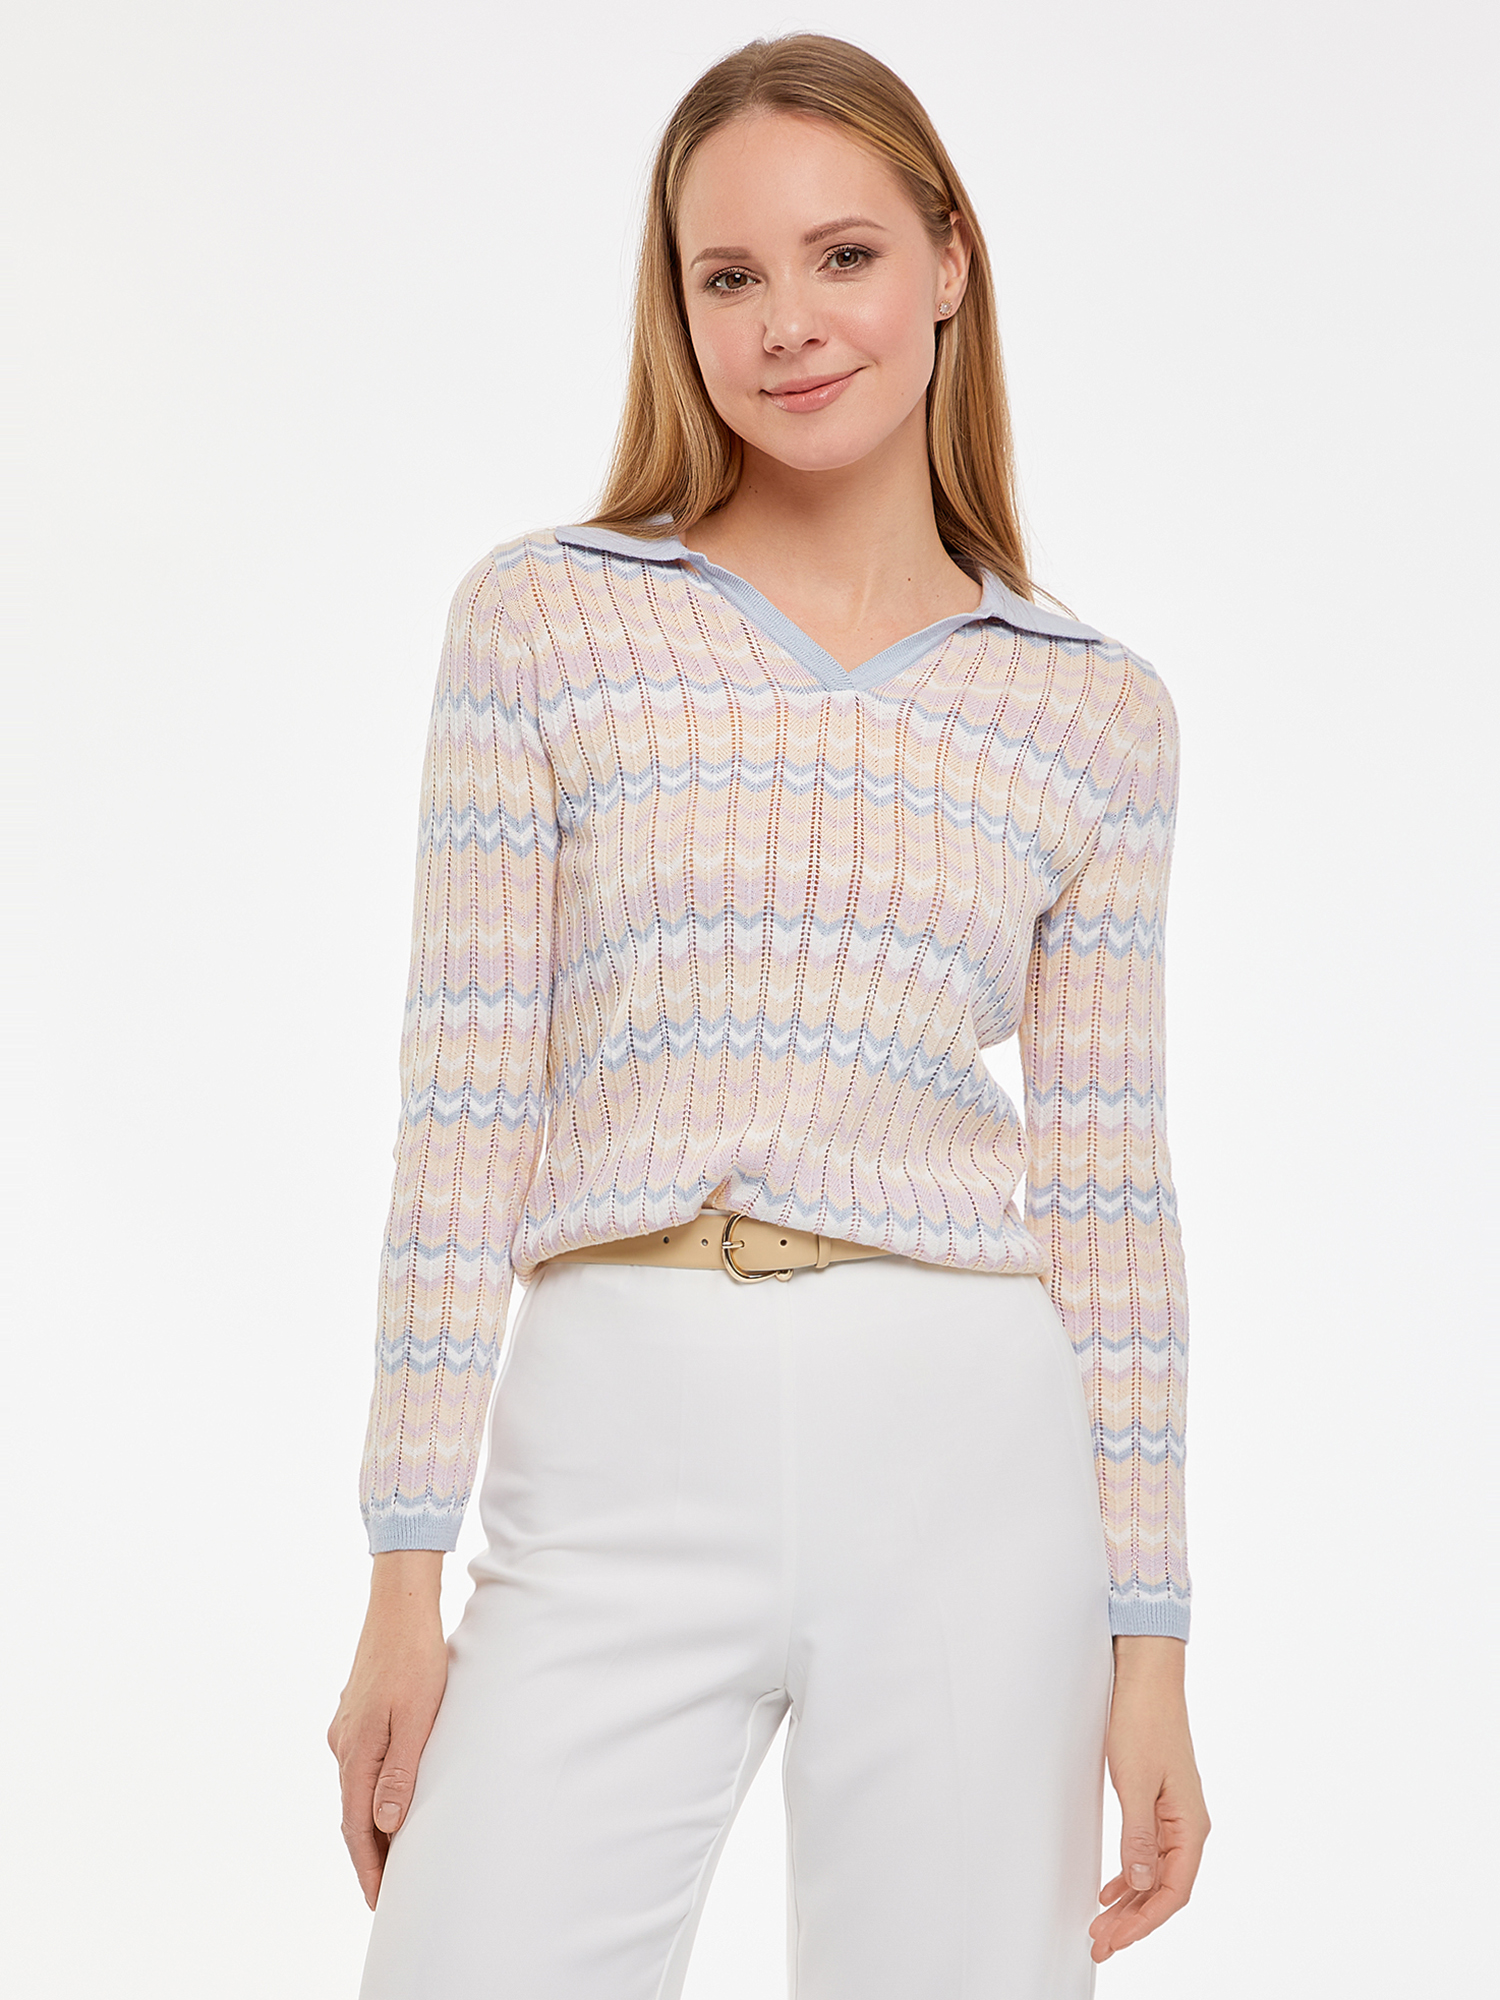 Пуловер женский oodji 63812717 розовый, пуловер, хлопок; полиакрил  - купить